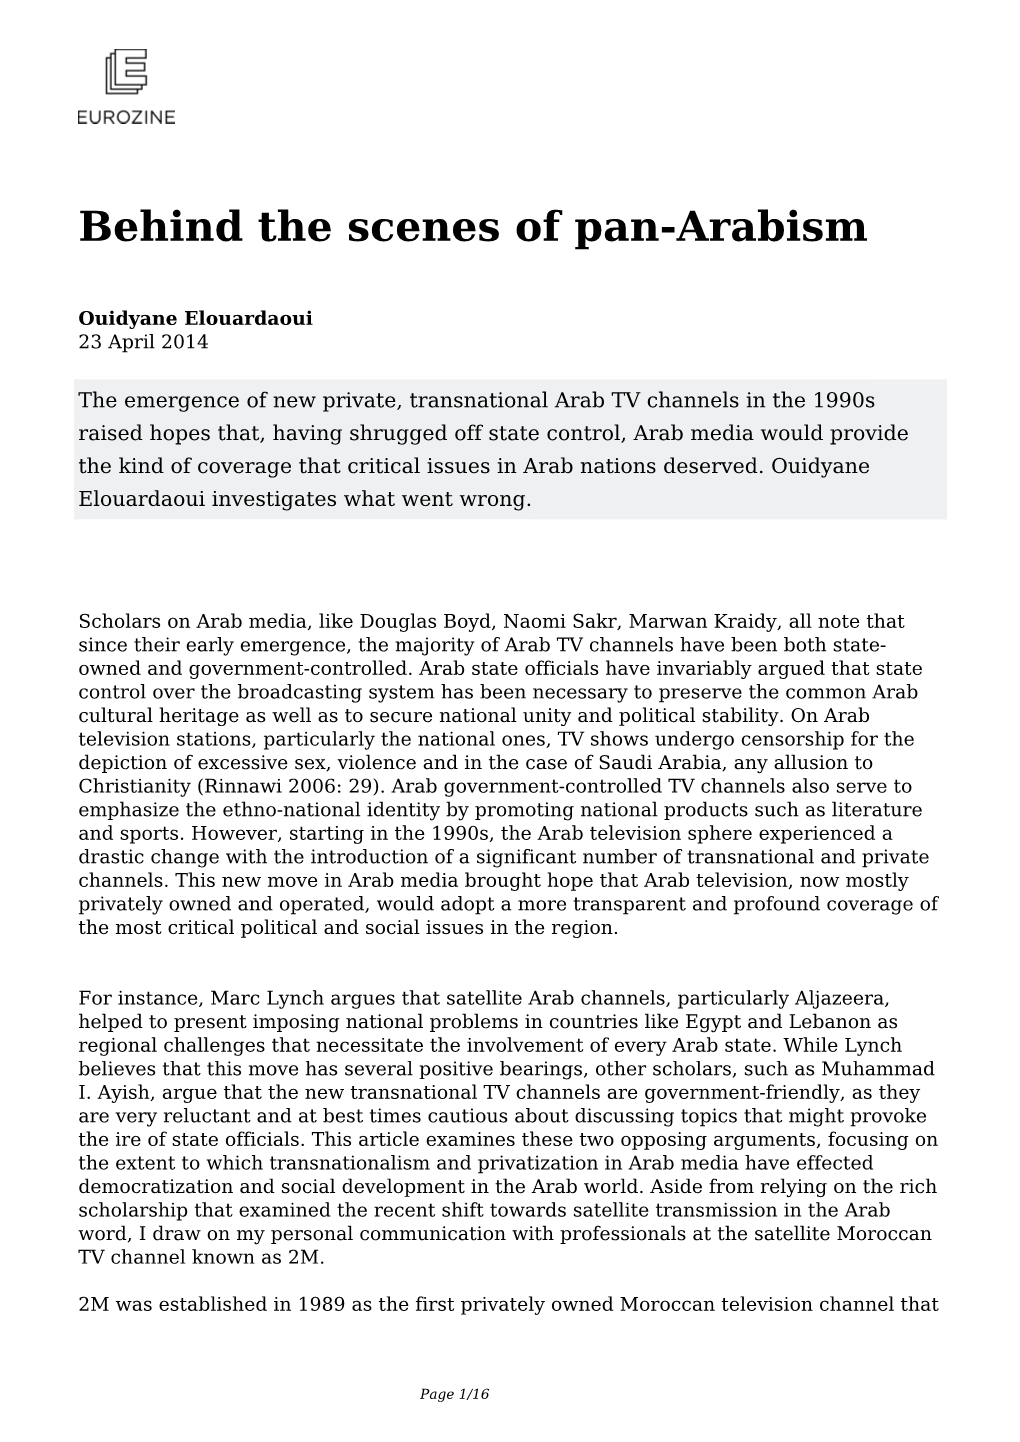 Behind the Scenes of Pan-Arabism